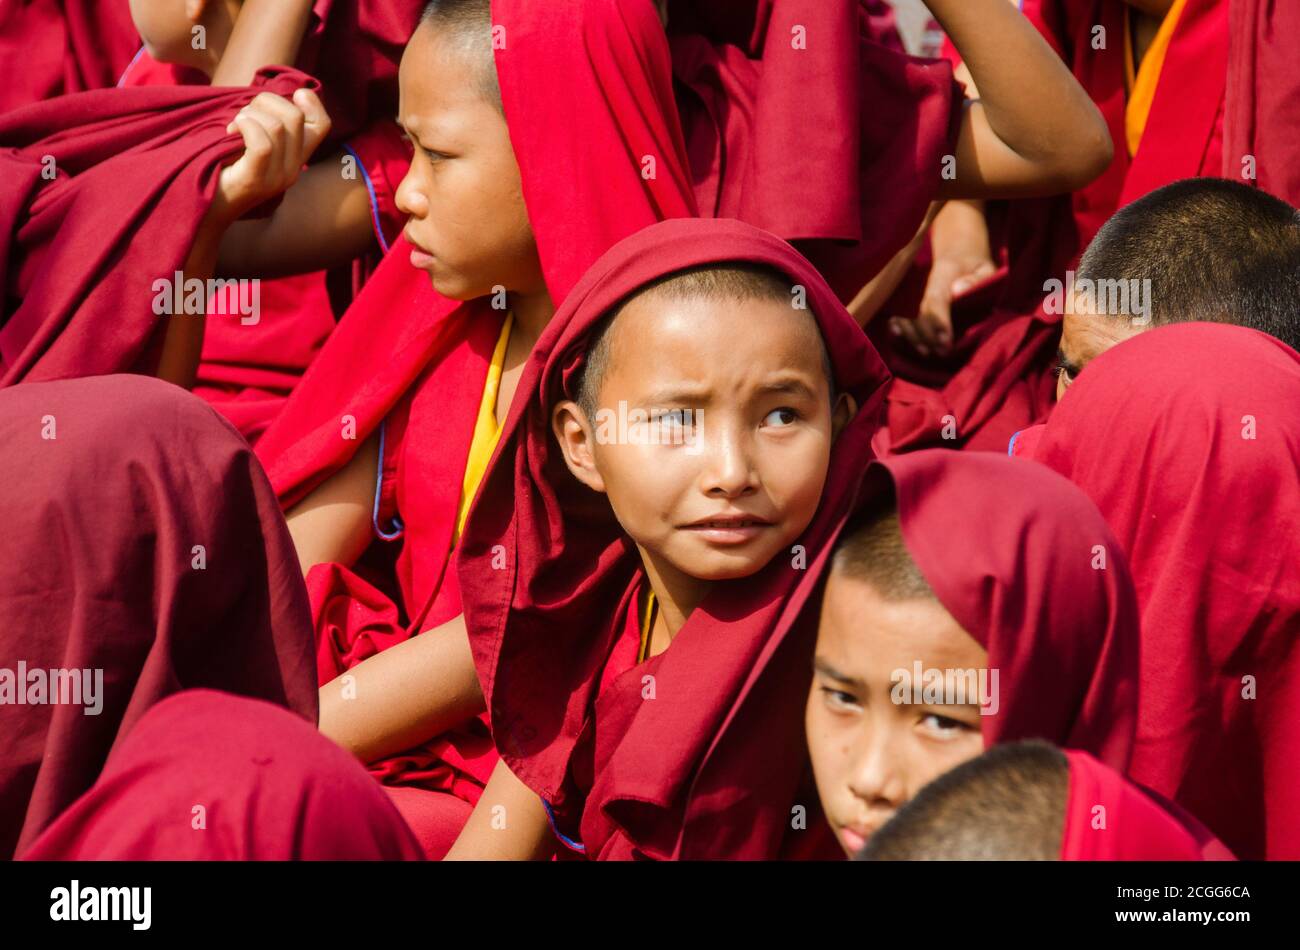 child tibetan lamas gatherd during prayer time at bodh gaya bihar india. Stock Photo